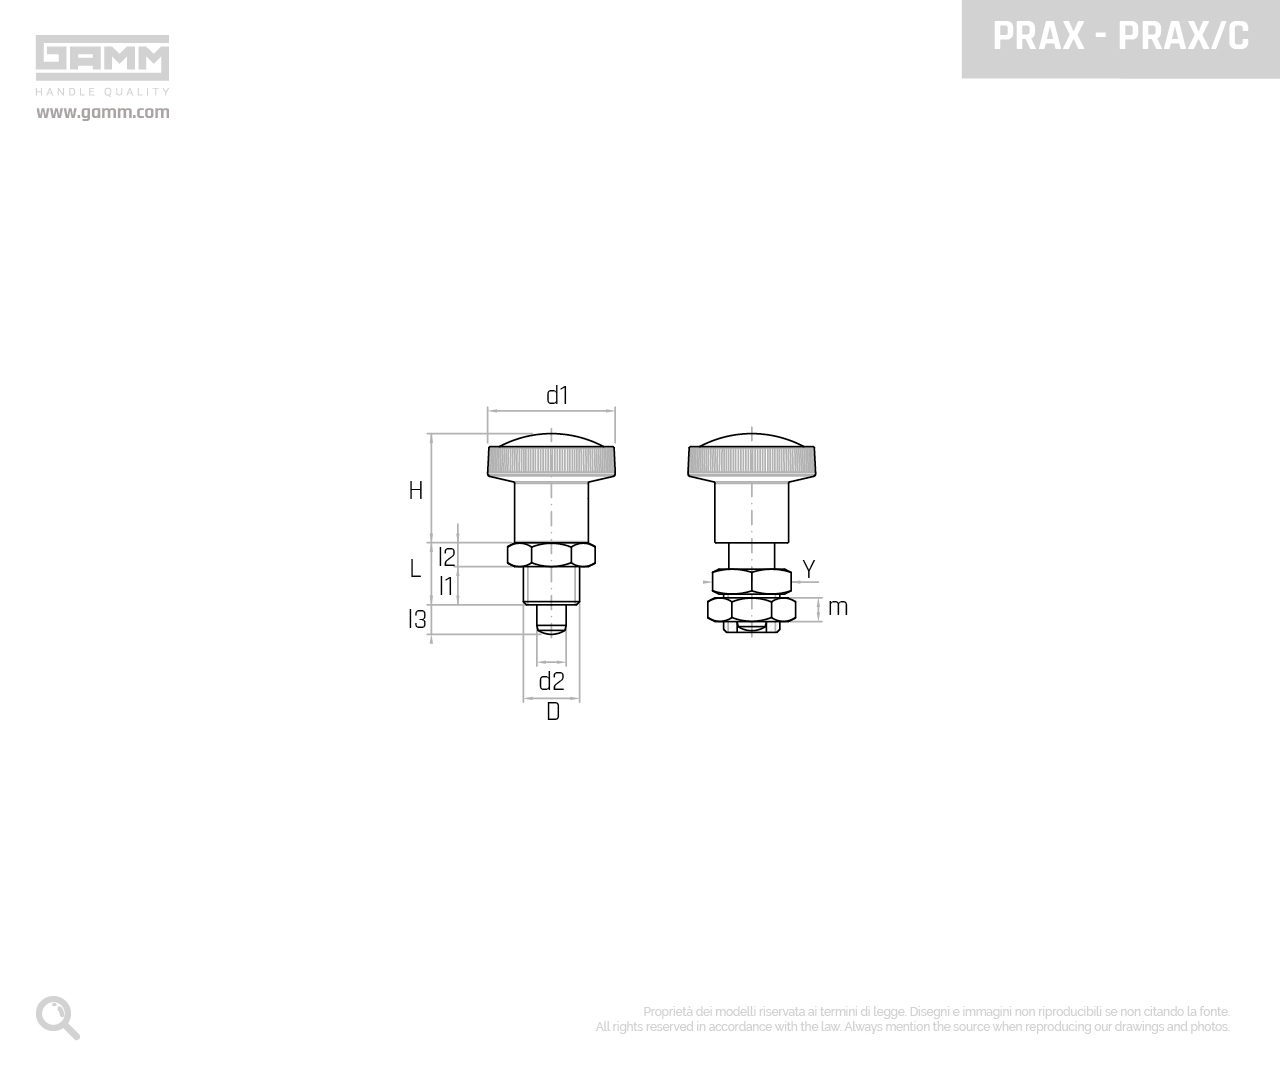 PRAX PRAX C disegno pistoncini e pressori GAMM 1